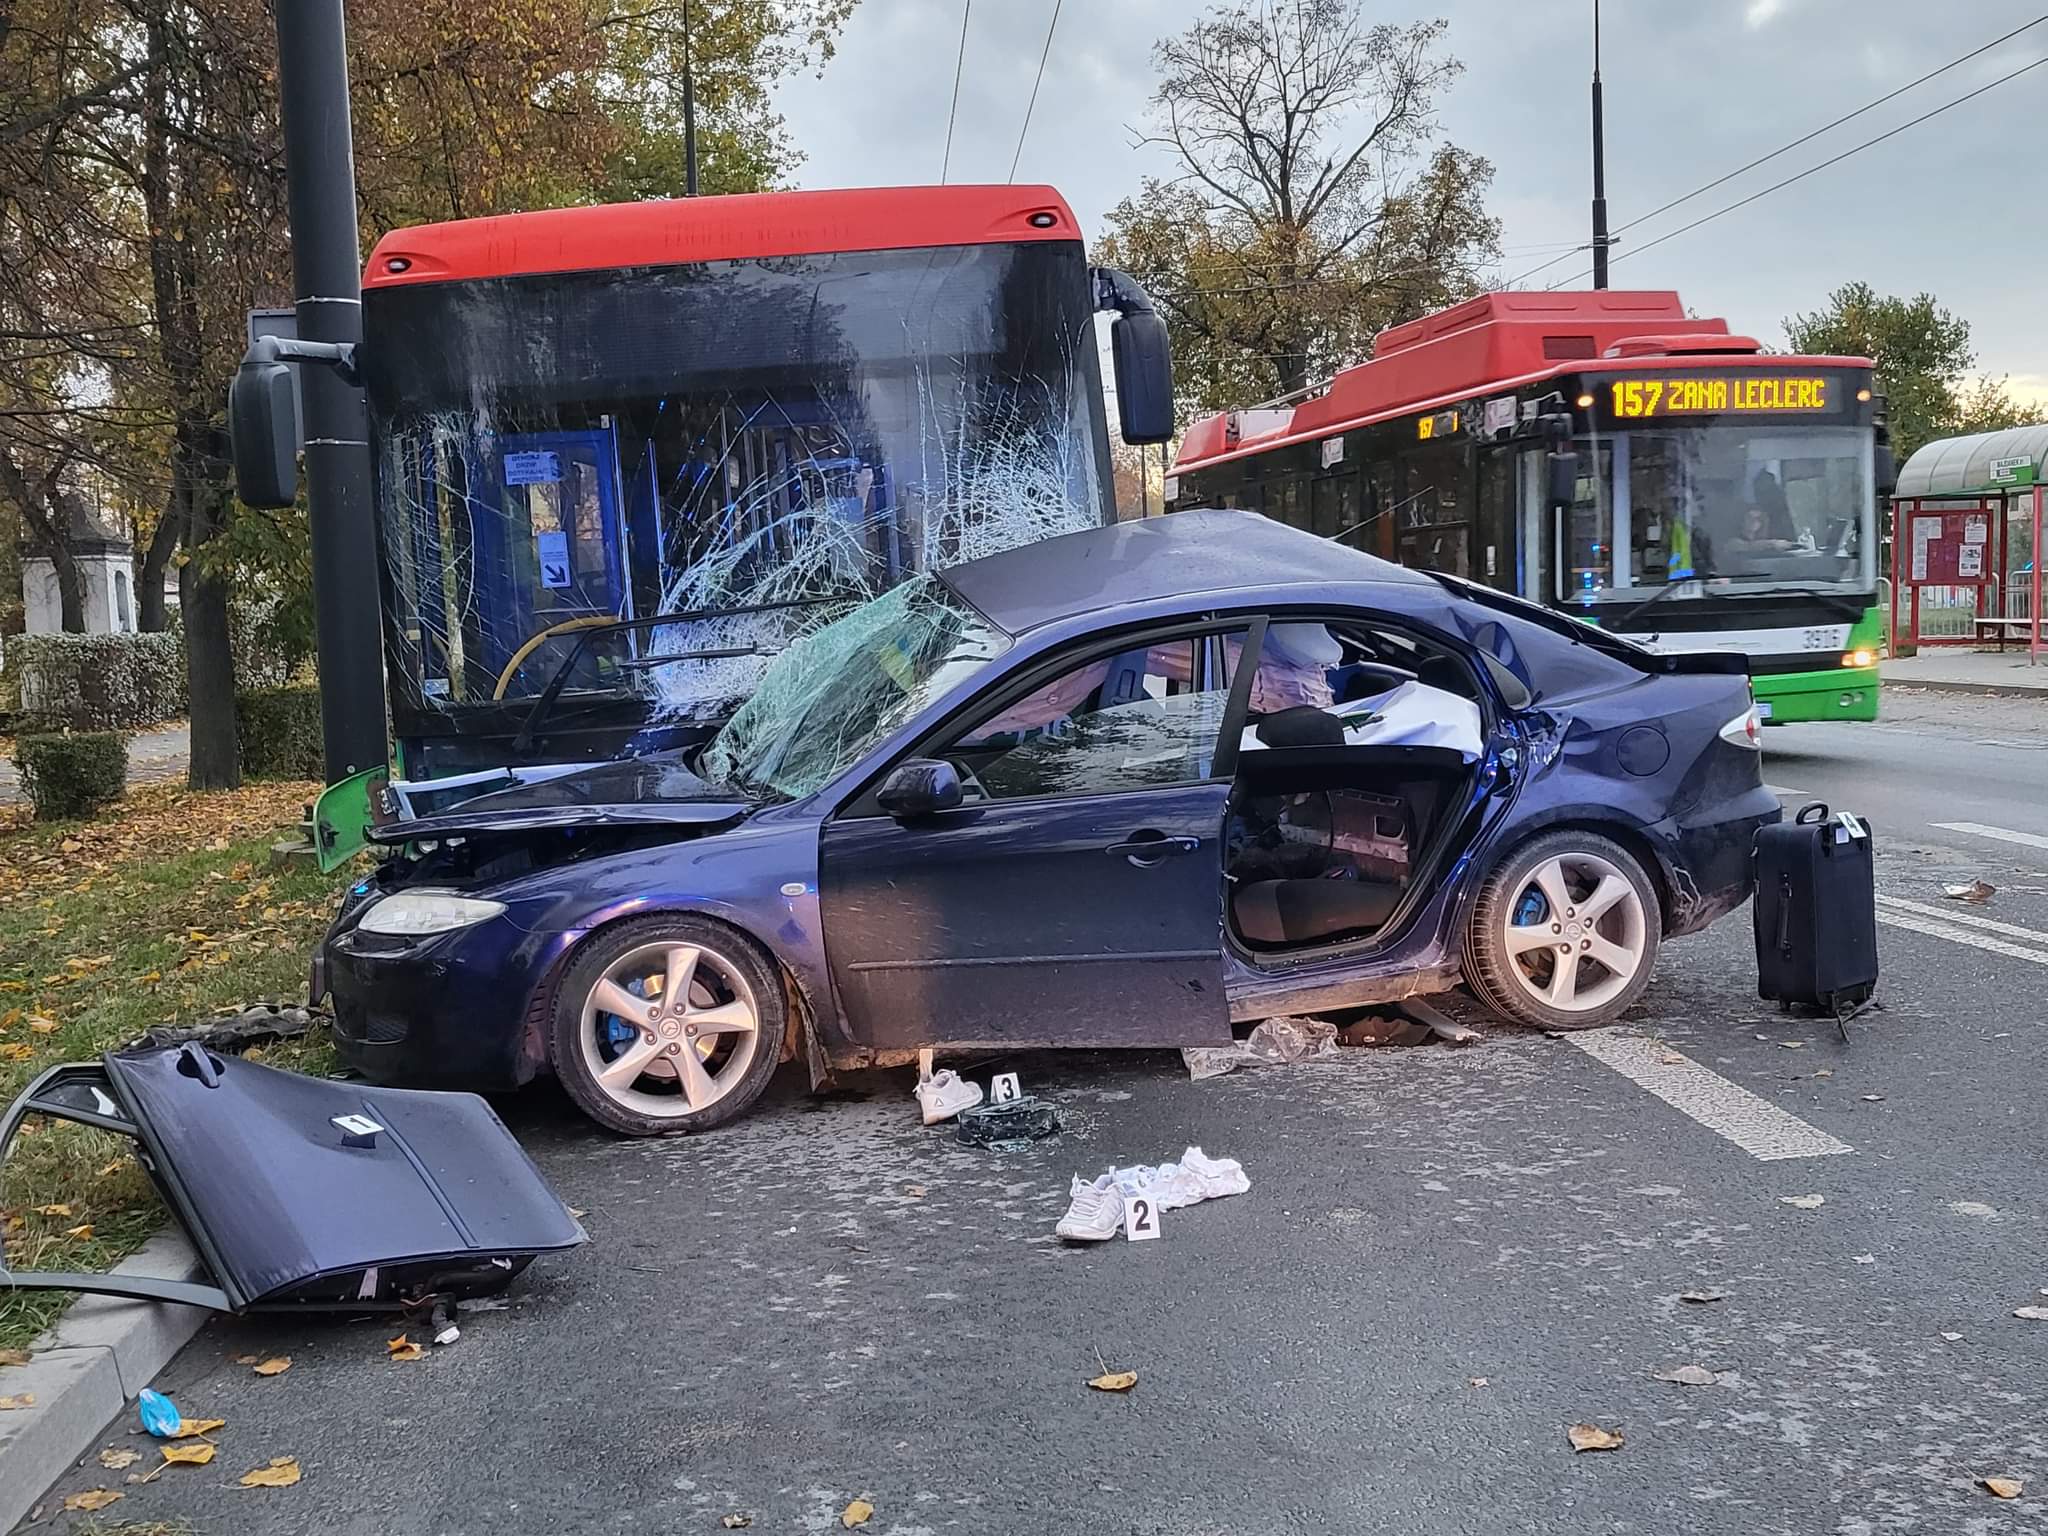 Mazda uderzyła w autobus. Wypadek zakończył się tragicznie, mężczyzna zmarł w szpitalu (zdjęcia)